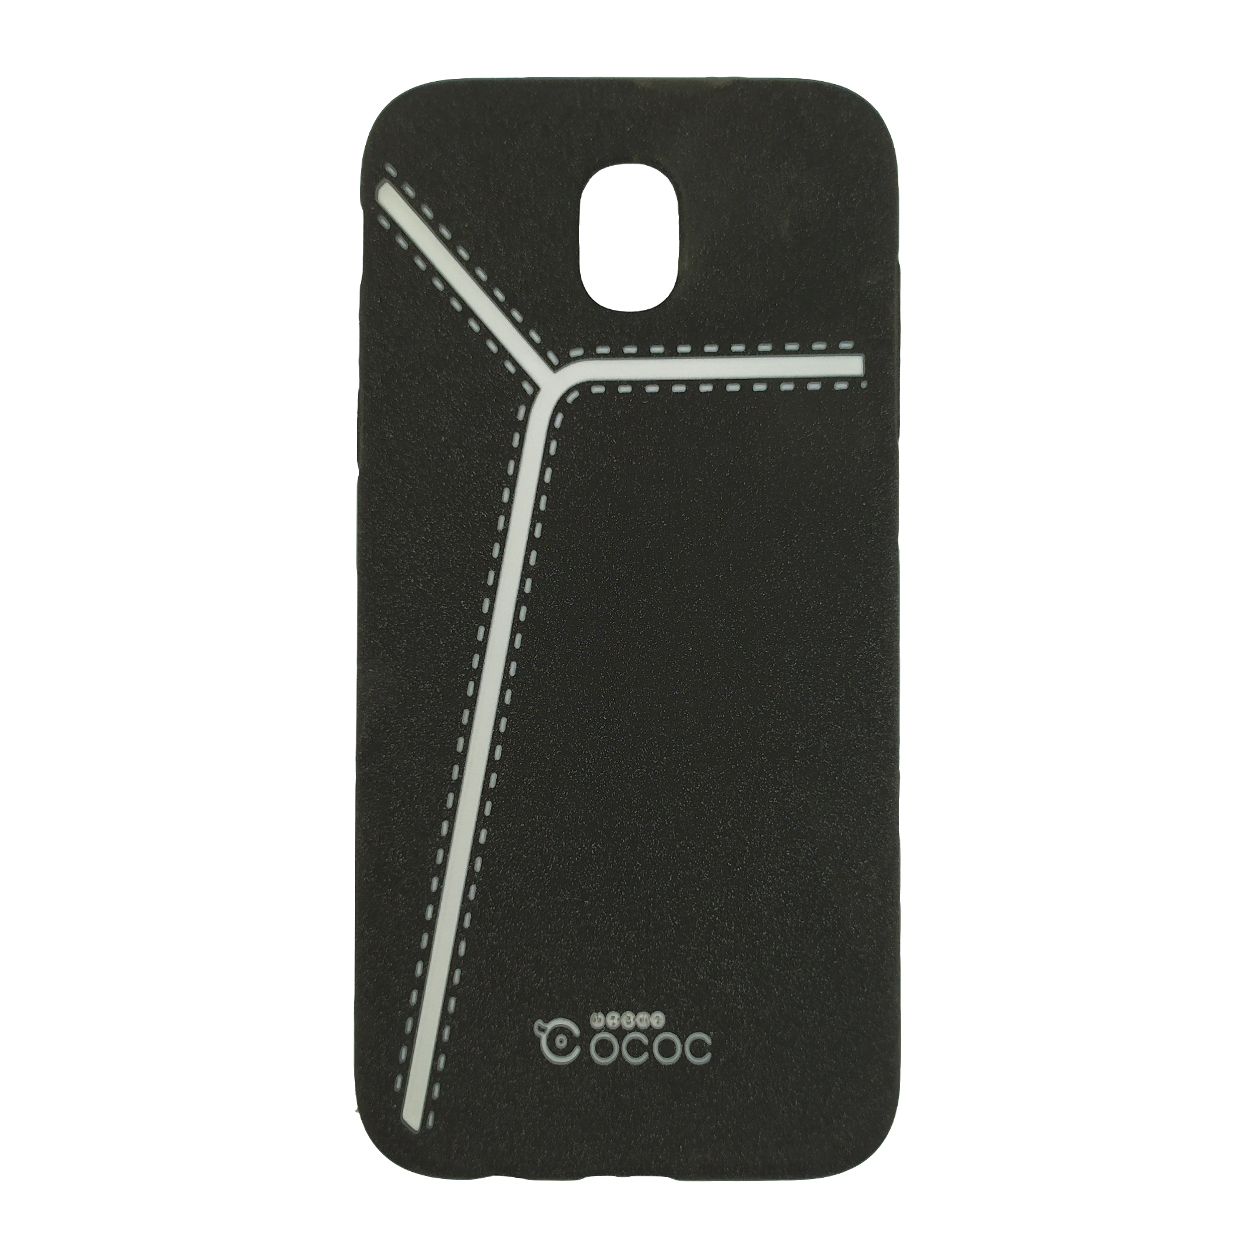 کاور کوکوک کد D-0 مناسب برای گوشی موبایل سامسونگ Galaxy J5 Pro